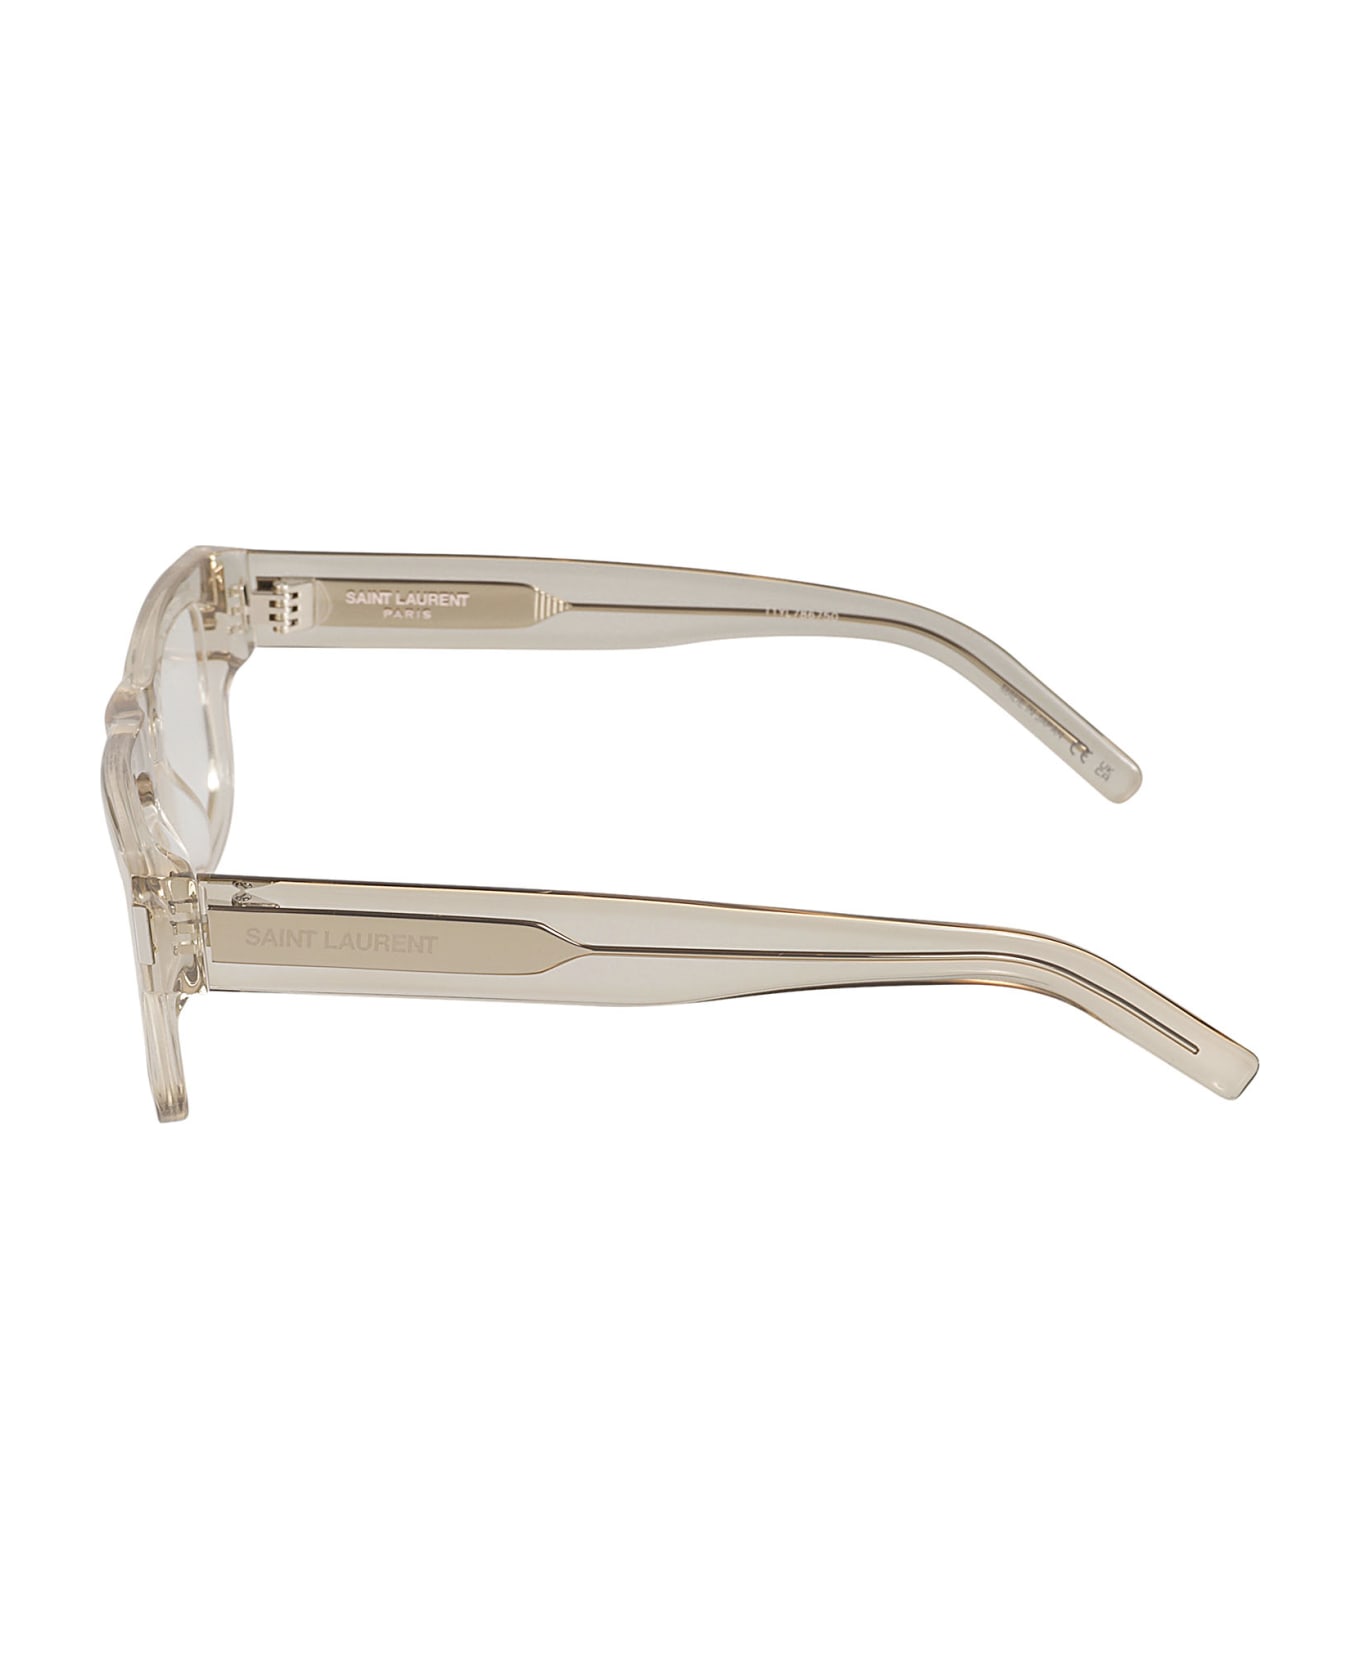 Saint Laurent Eyewear Square Frame Glasses - Beige/Transparent